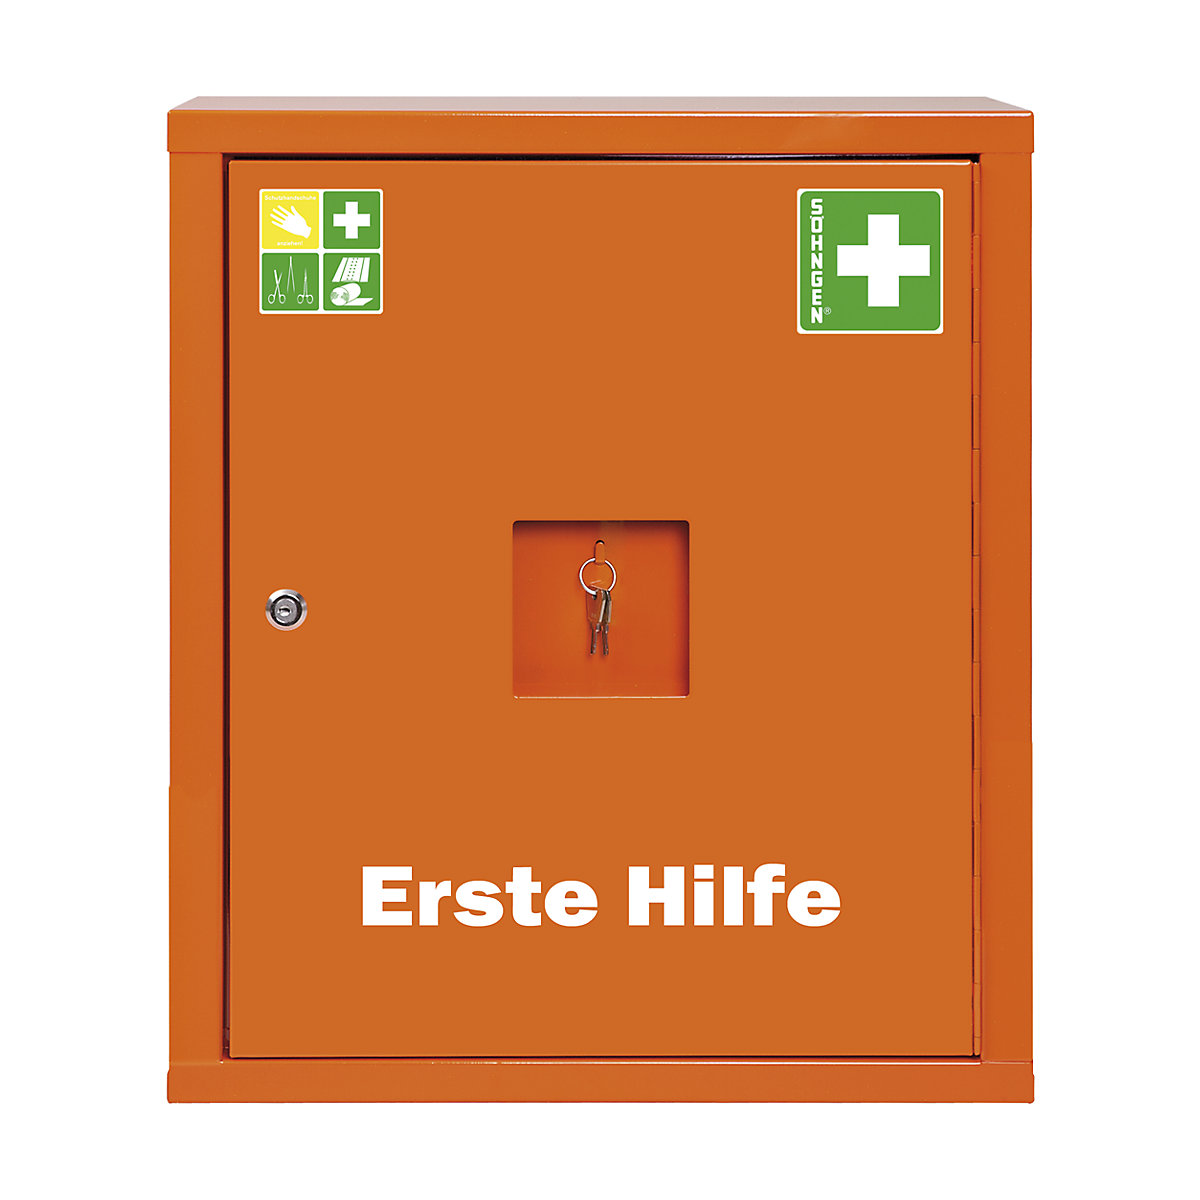 SÖHNGEN – Lekárnička podľa DIN 13169, jednodverové, signálna oranžová, v x š x h 560 x 490 x 200 mm, bez obsahu